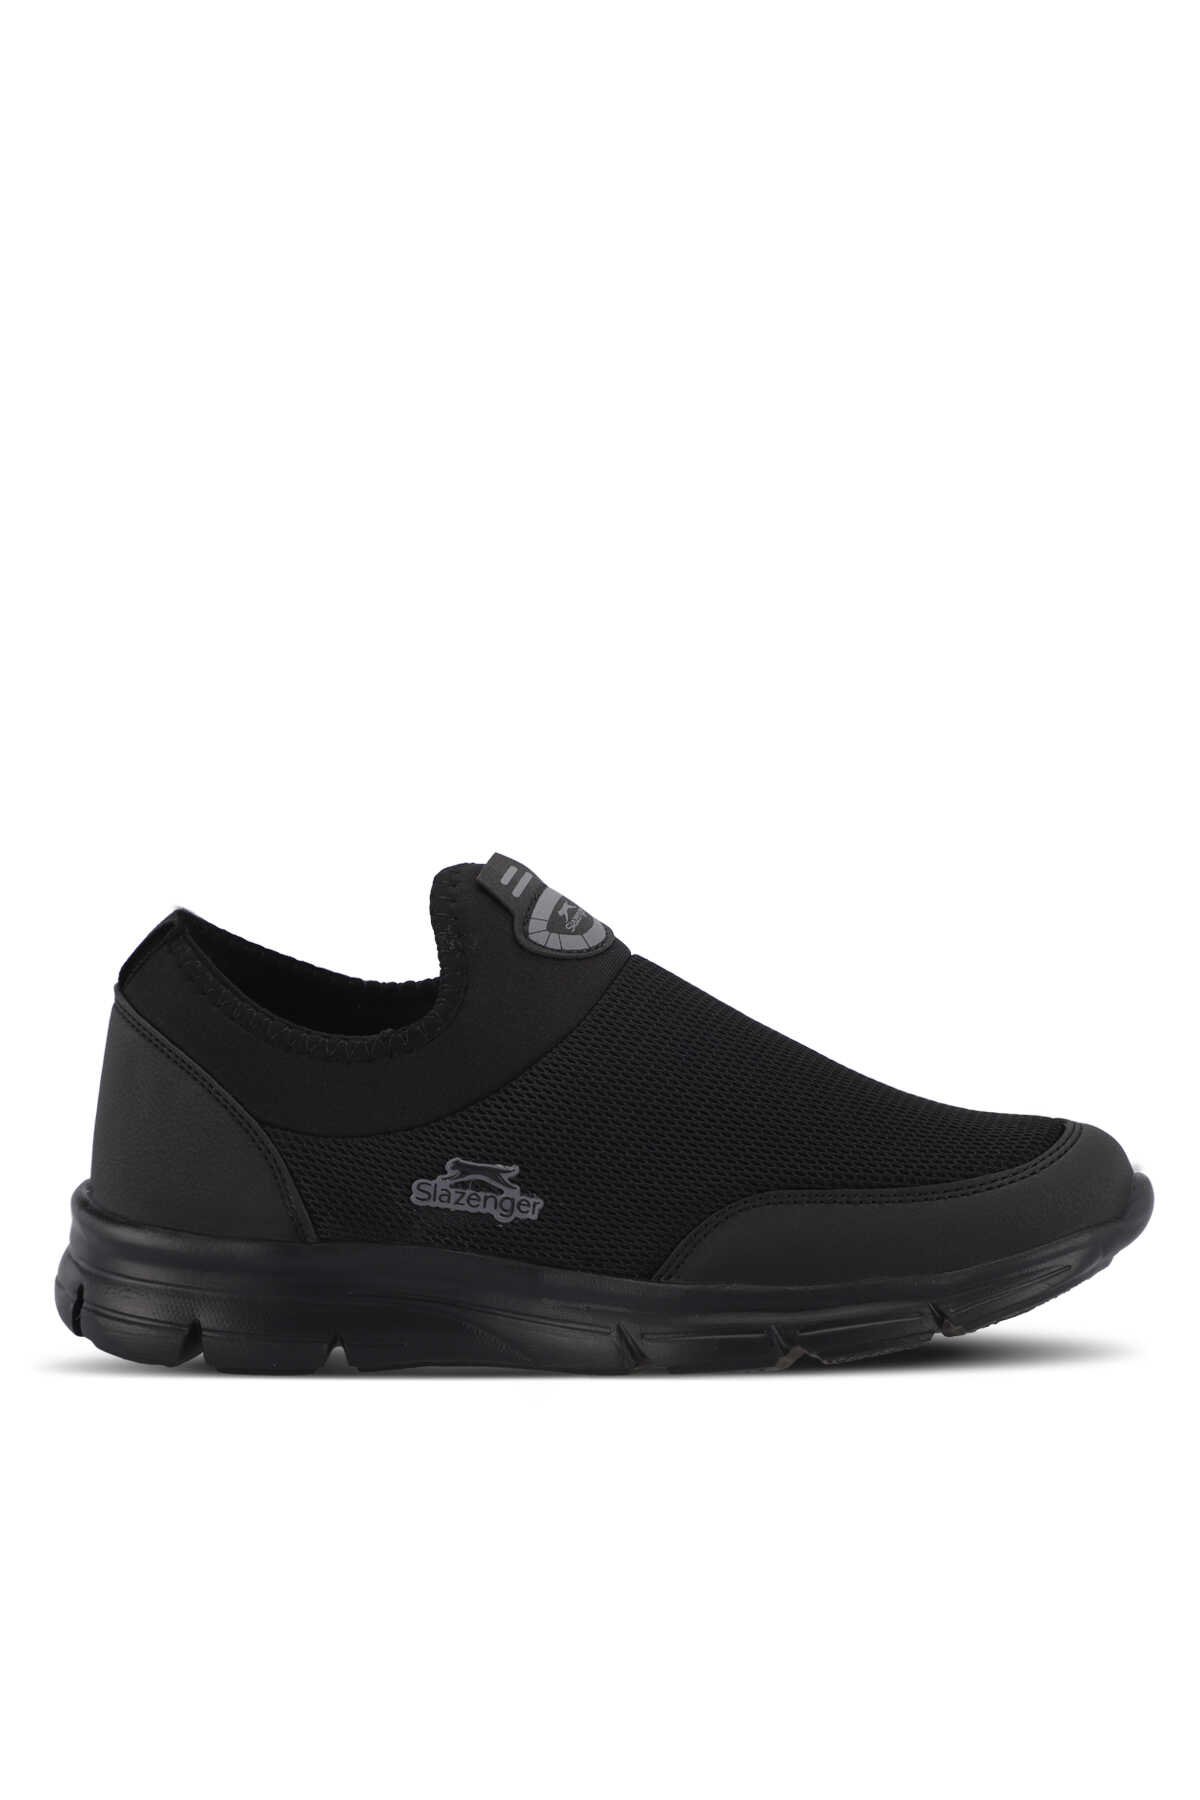 Slazenger - Slazenger EDINBURG Erkek Sneaker Ayakkabı Siyah / Siyah